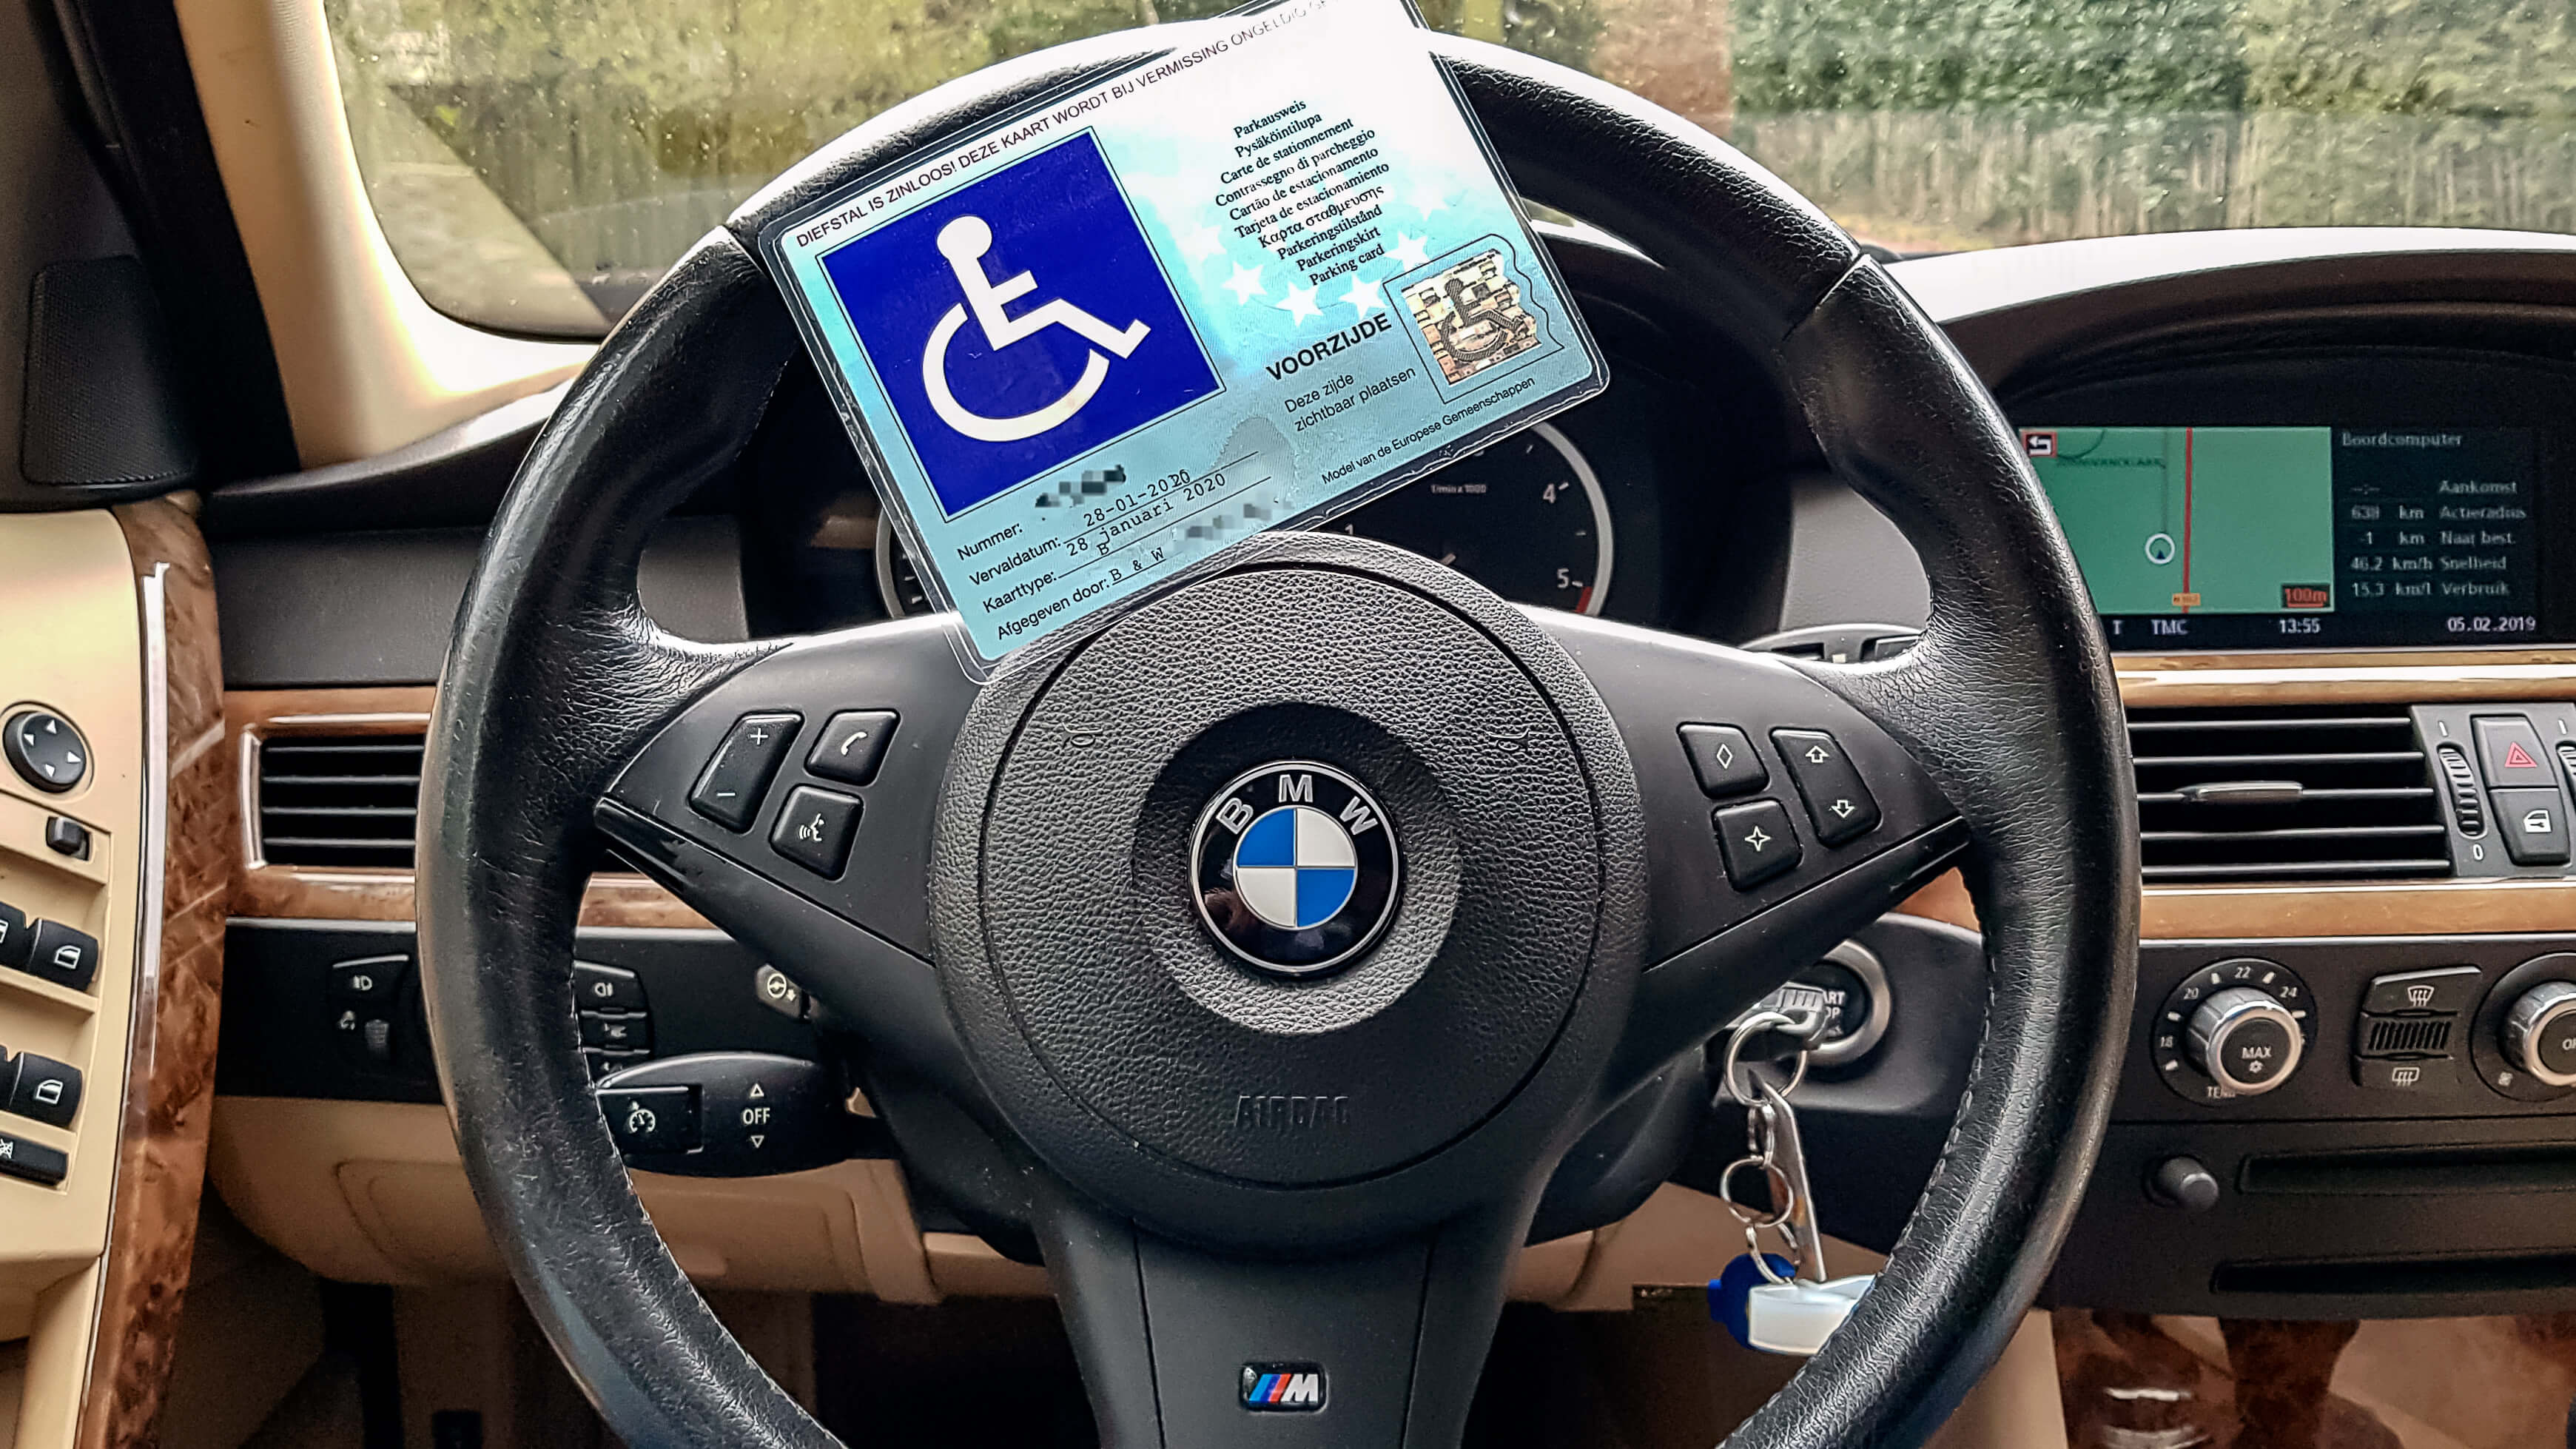 Afbeelding van gehandicaptenparkeerkaart vanwege ziekte van bechterew reuma op het stuur van een BMW 5-serie